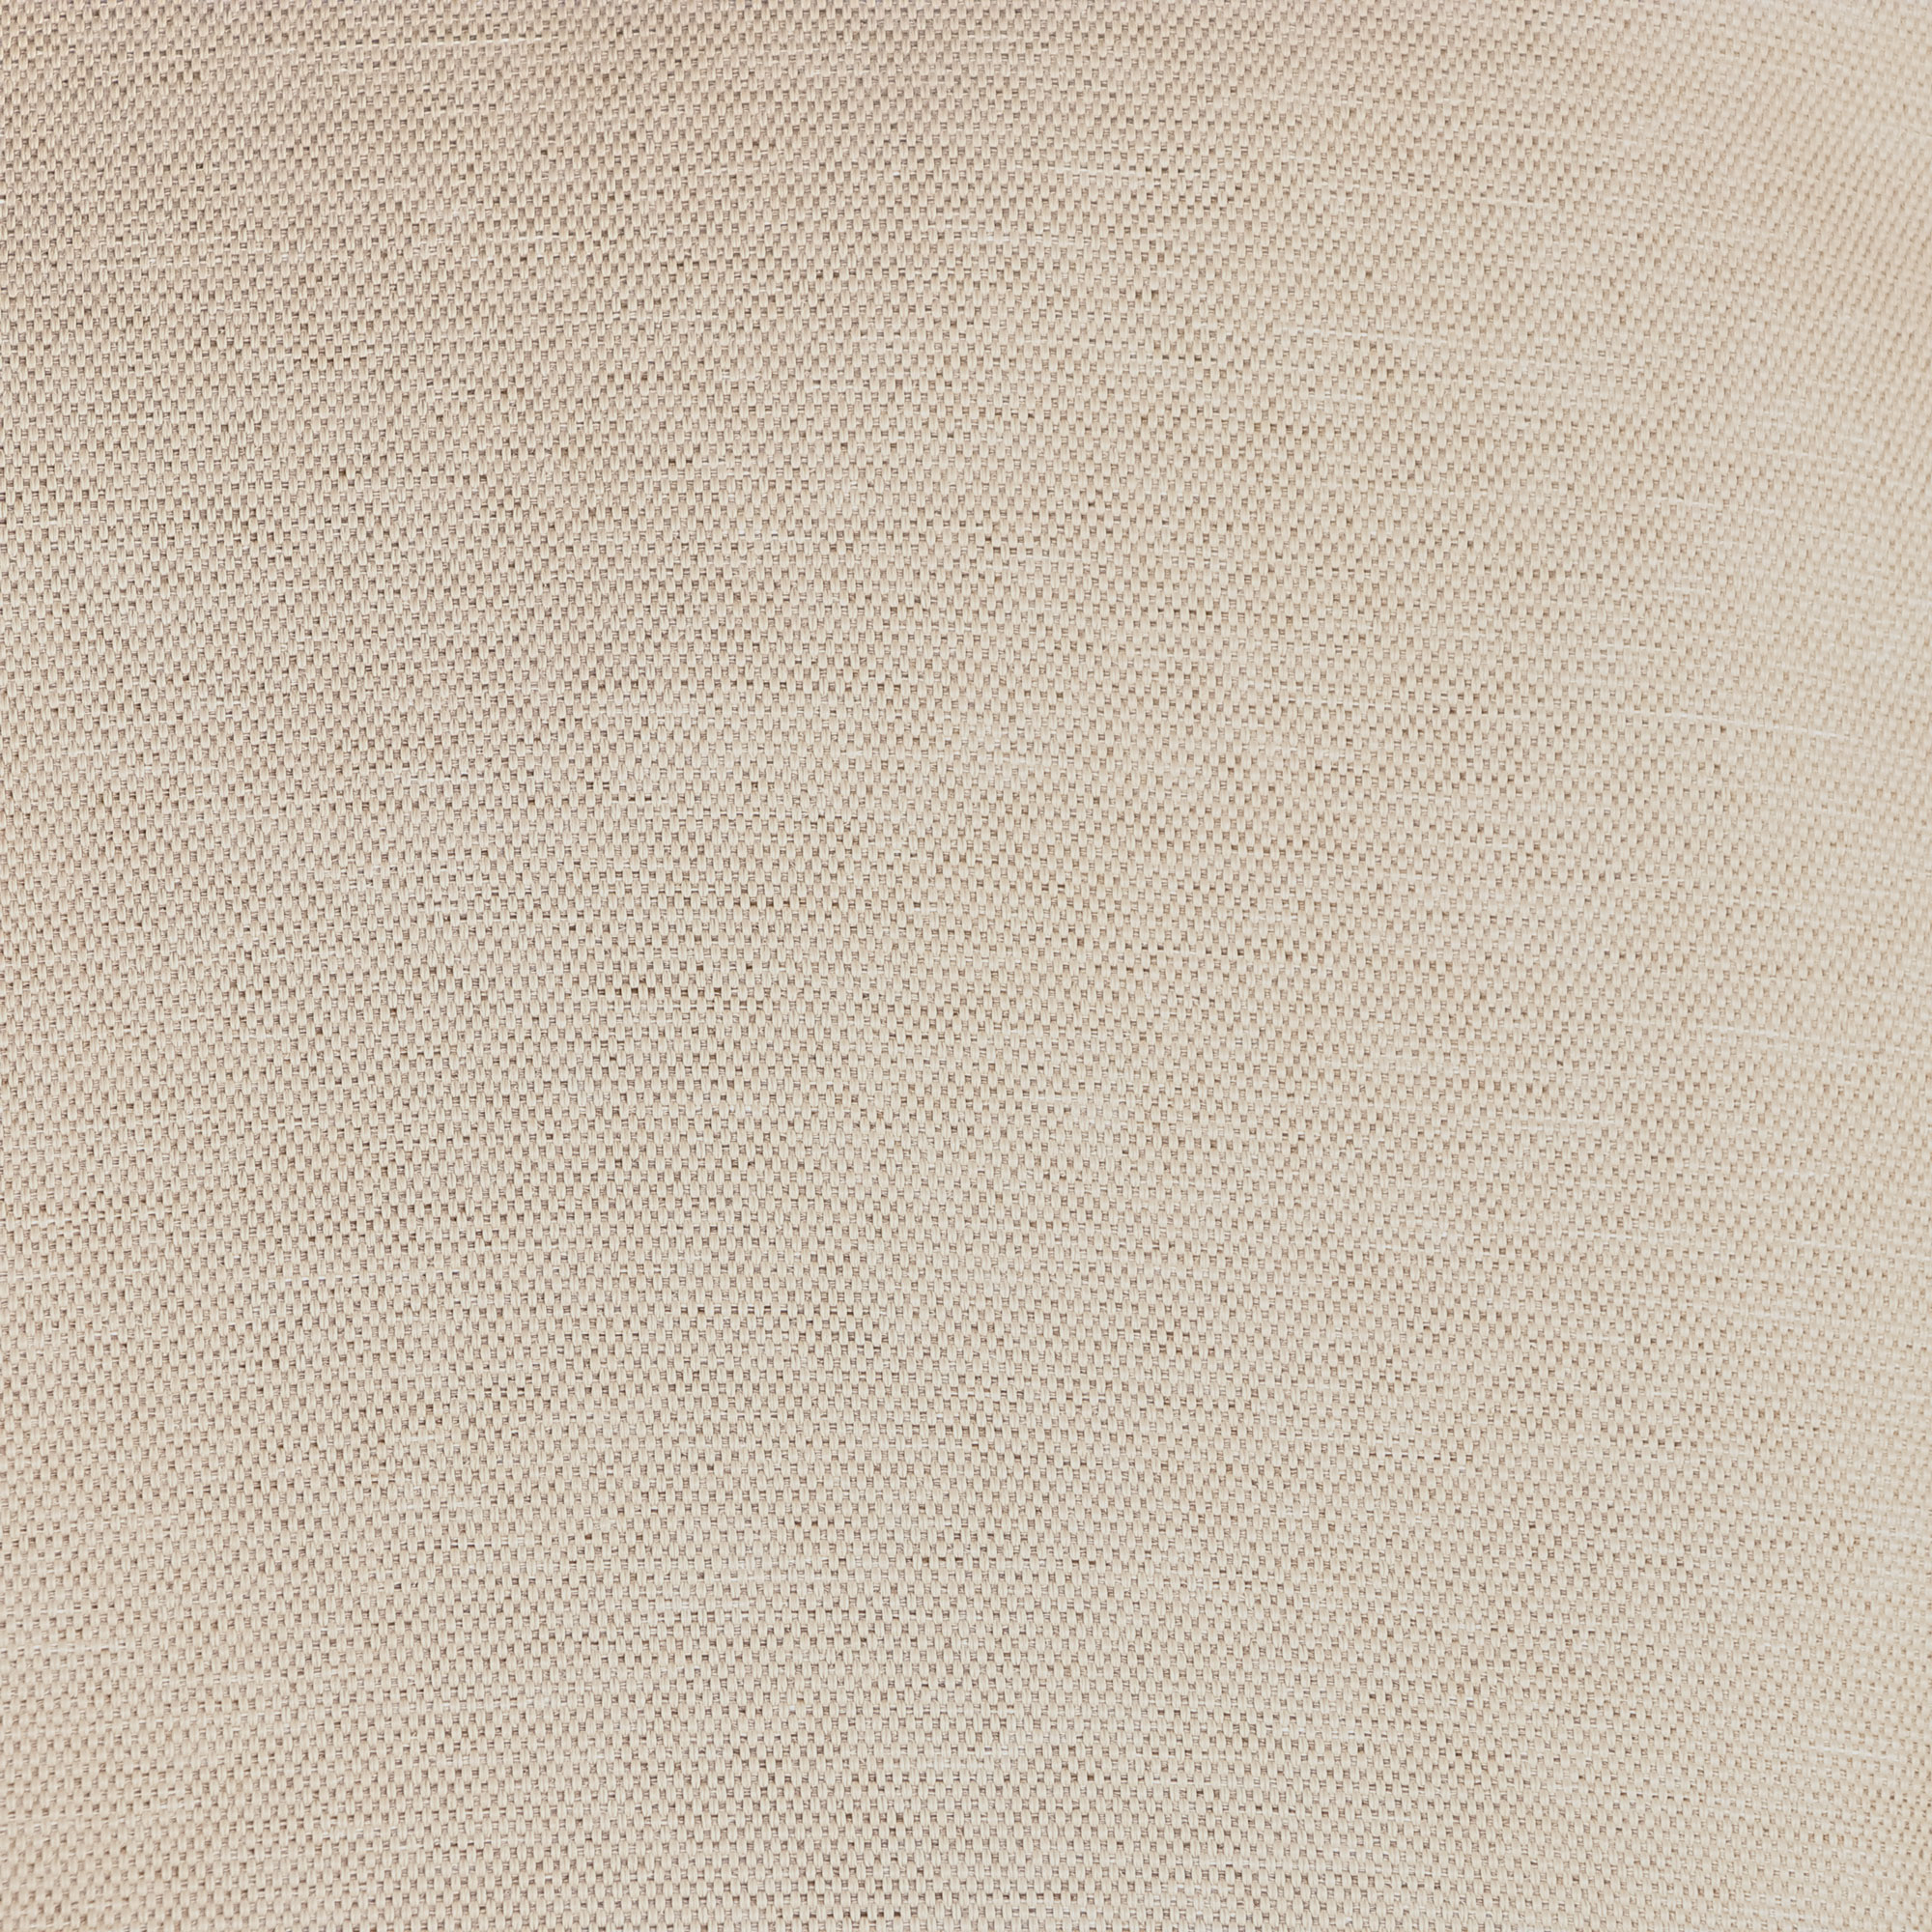 Кресло круглое подвесное NS RATTAN/MAVI luna 155х230 см, цвет коричневый - фото 10